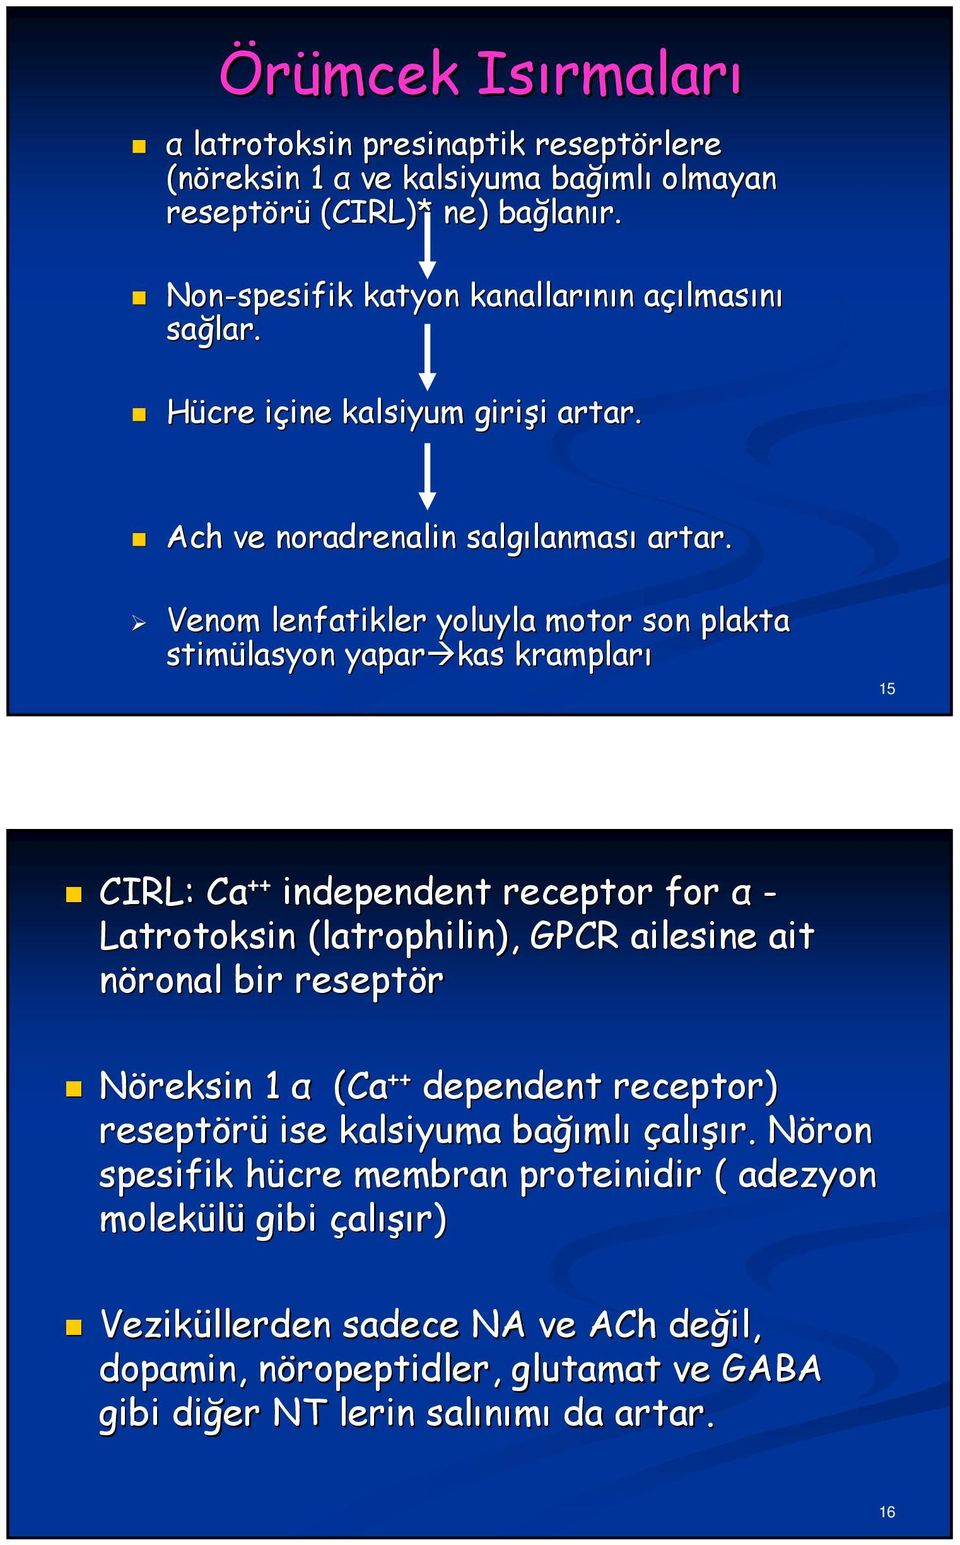 Venom lenfatikler yoluyla motor son plakta stimülasyon yapar kas krampları 15 CIRL: Ca ++ independent receptor for α - Latrotoksin (latrophilin), GPCR ailesine ait nöronal bir